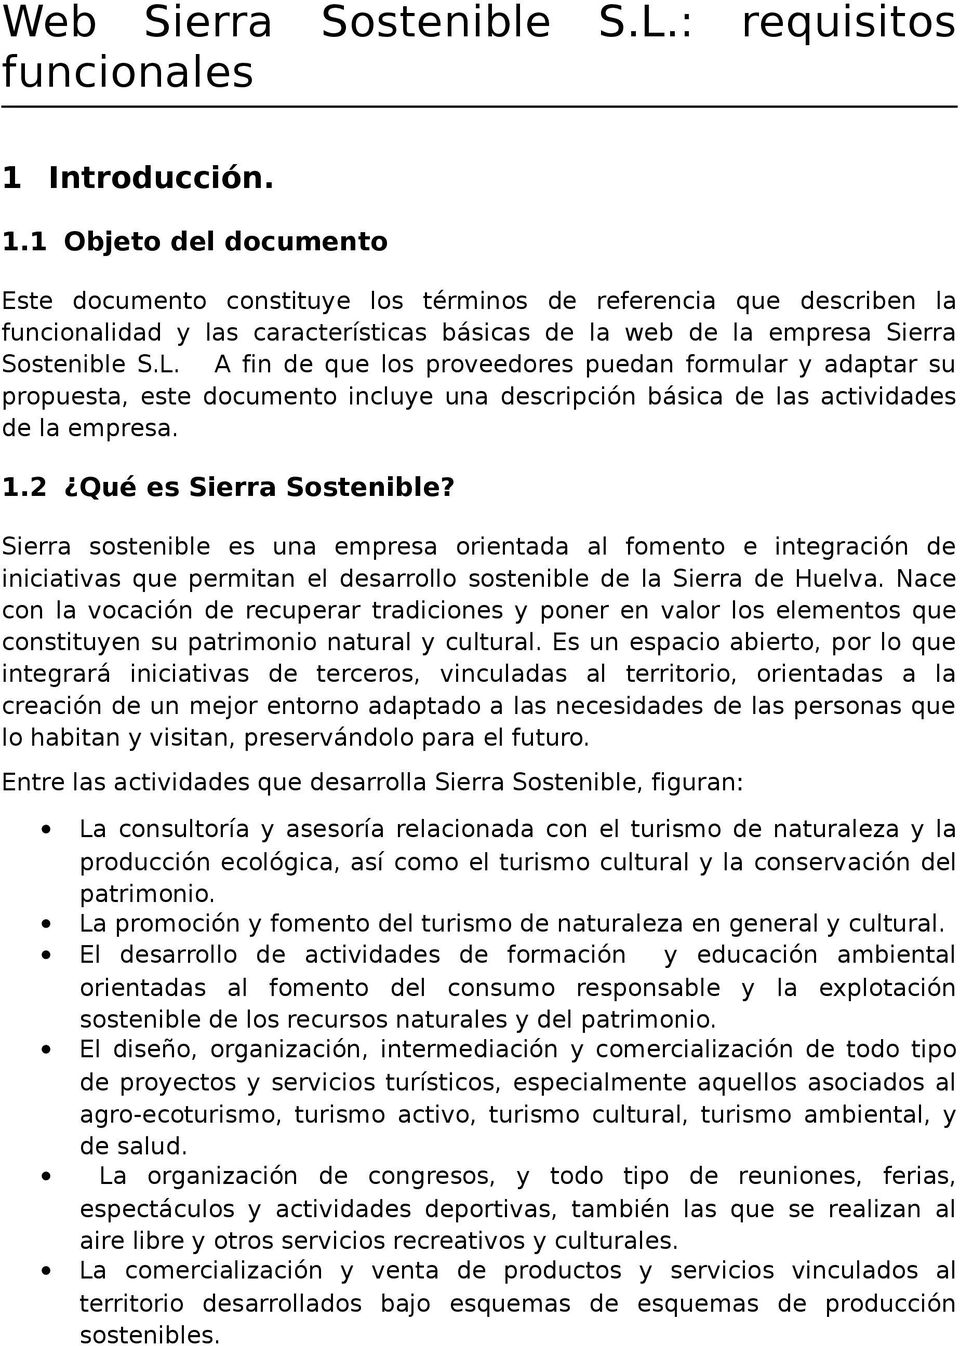 A fin de que los proveedores puedan formular y adaptar su propuesta, este documento incluye una descripción básica de las actividades de la empresa. 1.2 Qué es Sierra Sostenible?